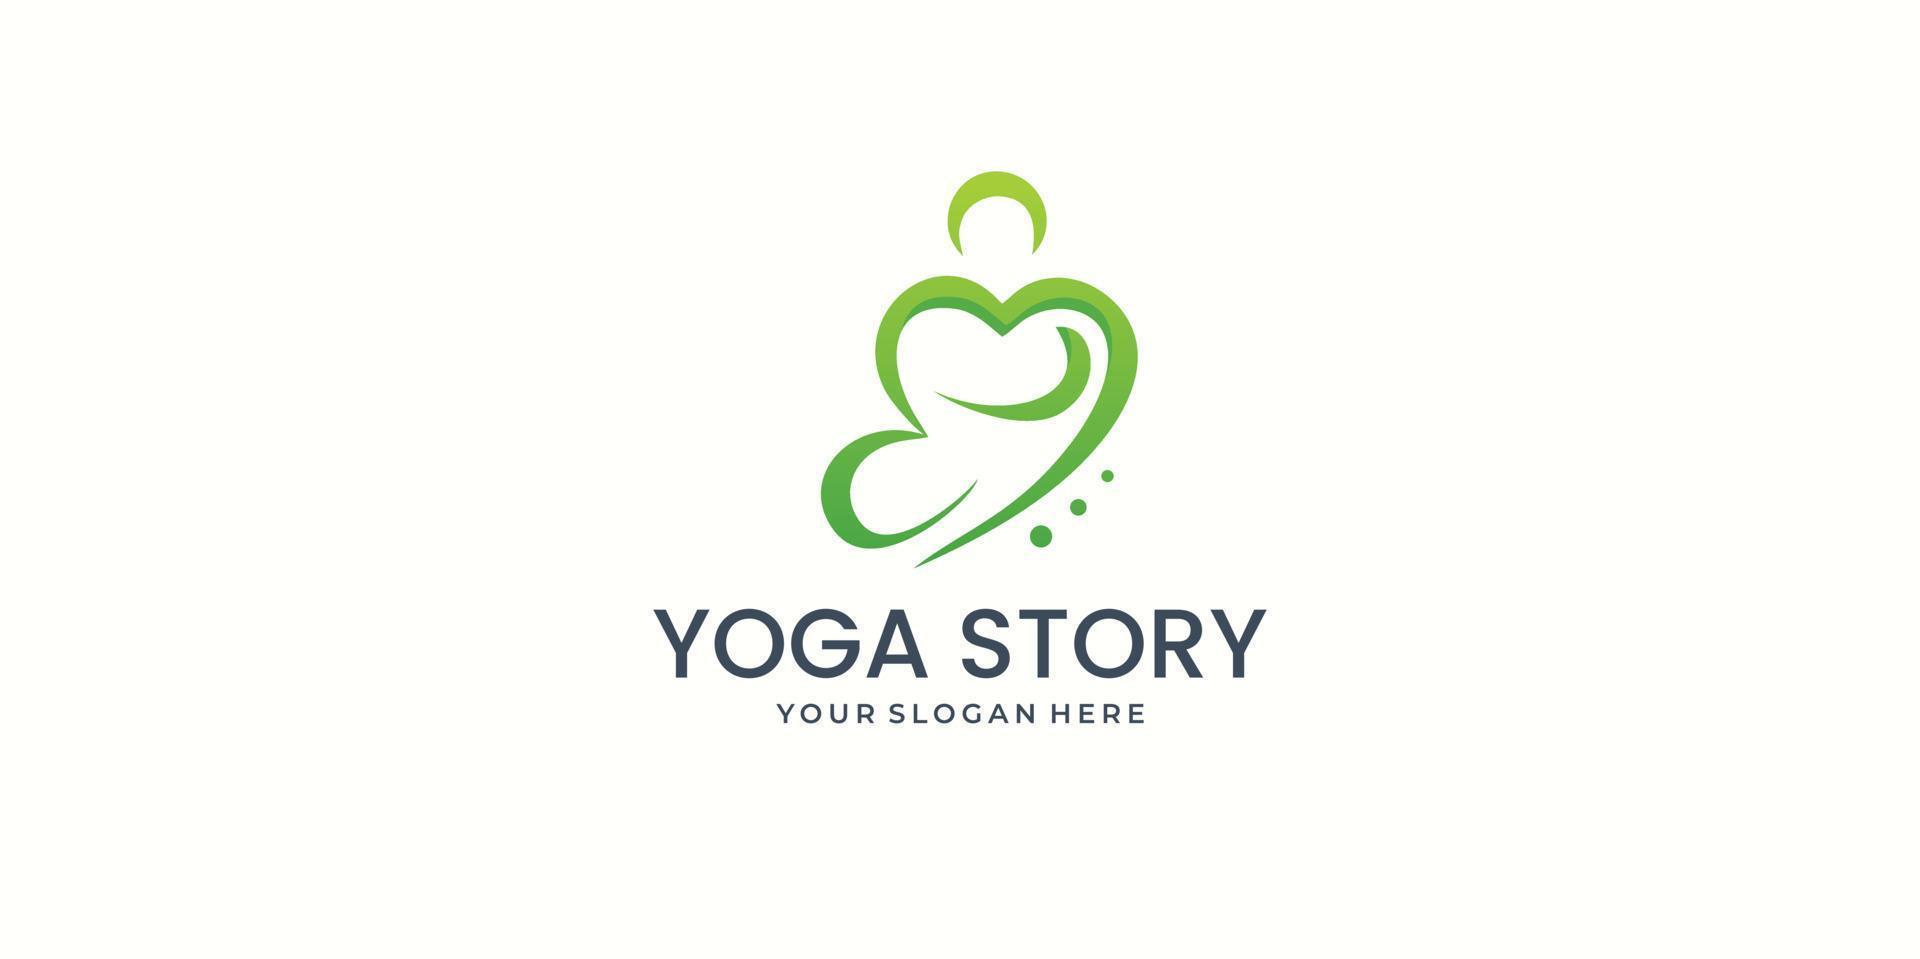 história de saúde de ioga vector template.logo conceito de design, médico, cuidados de saúde, história. vetor premium